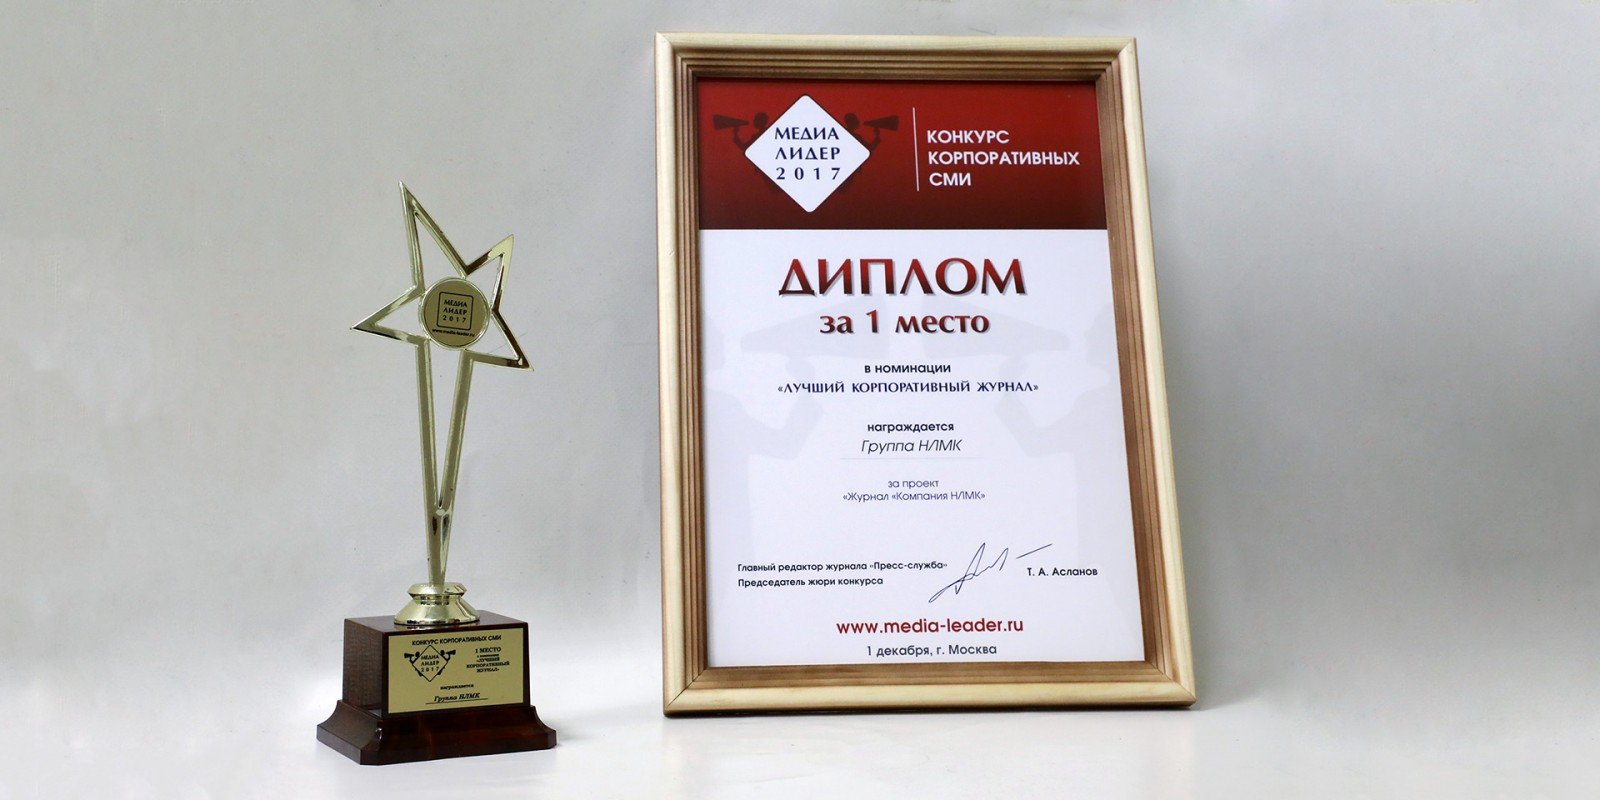 Медиа-проекты Группы НЛМК победили во всероссийском конкурсе «Медиалидер – 2017»